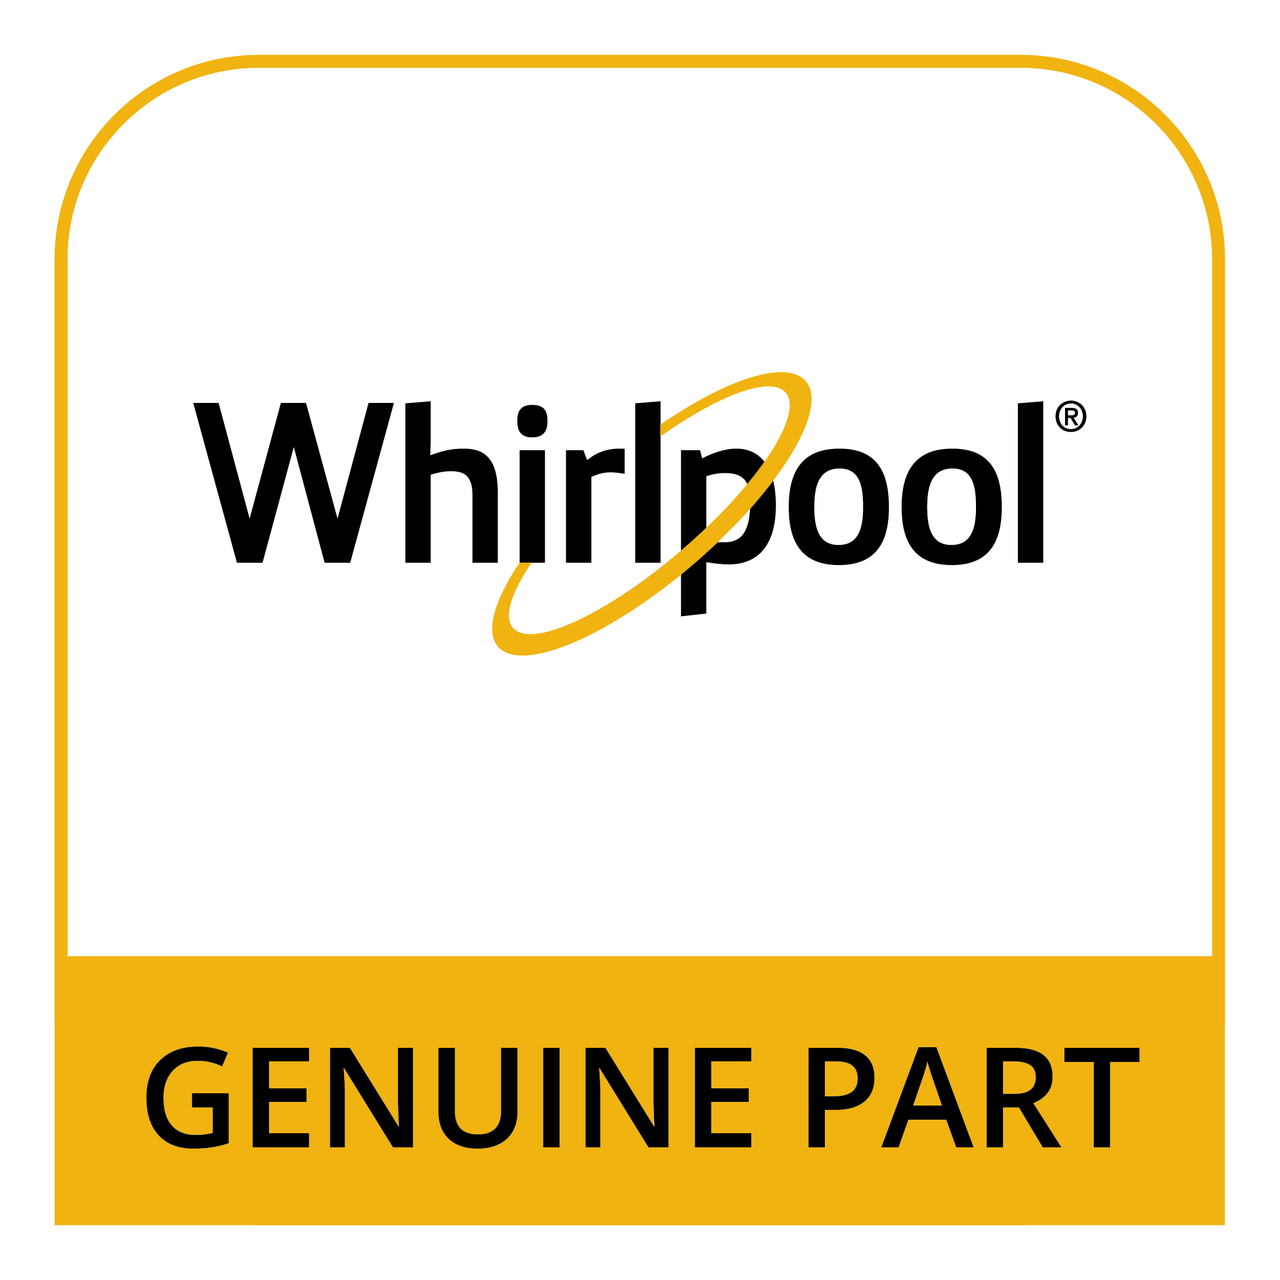 Whirlpool WFR875061 - 1/4" Turn *Non-Wise* - Genuine Part